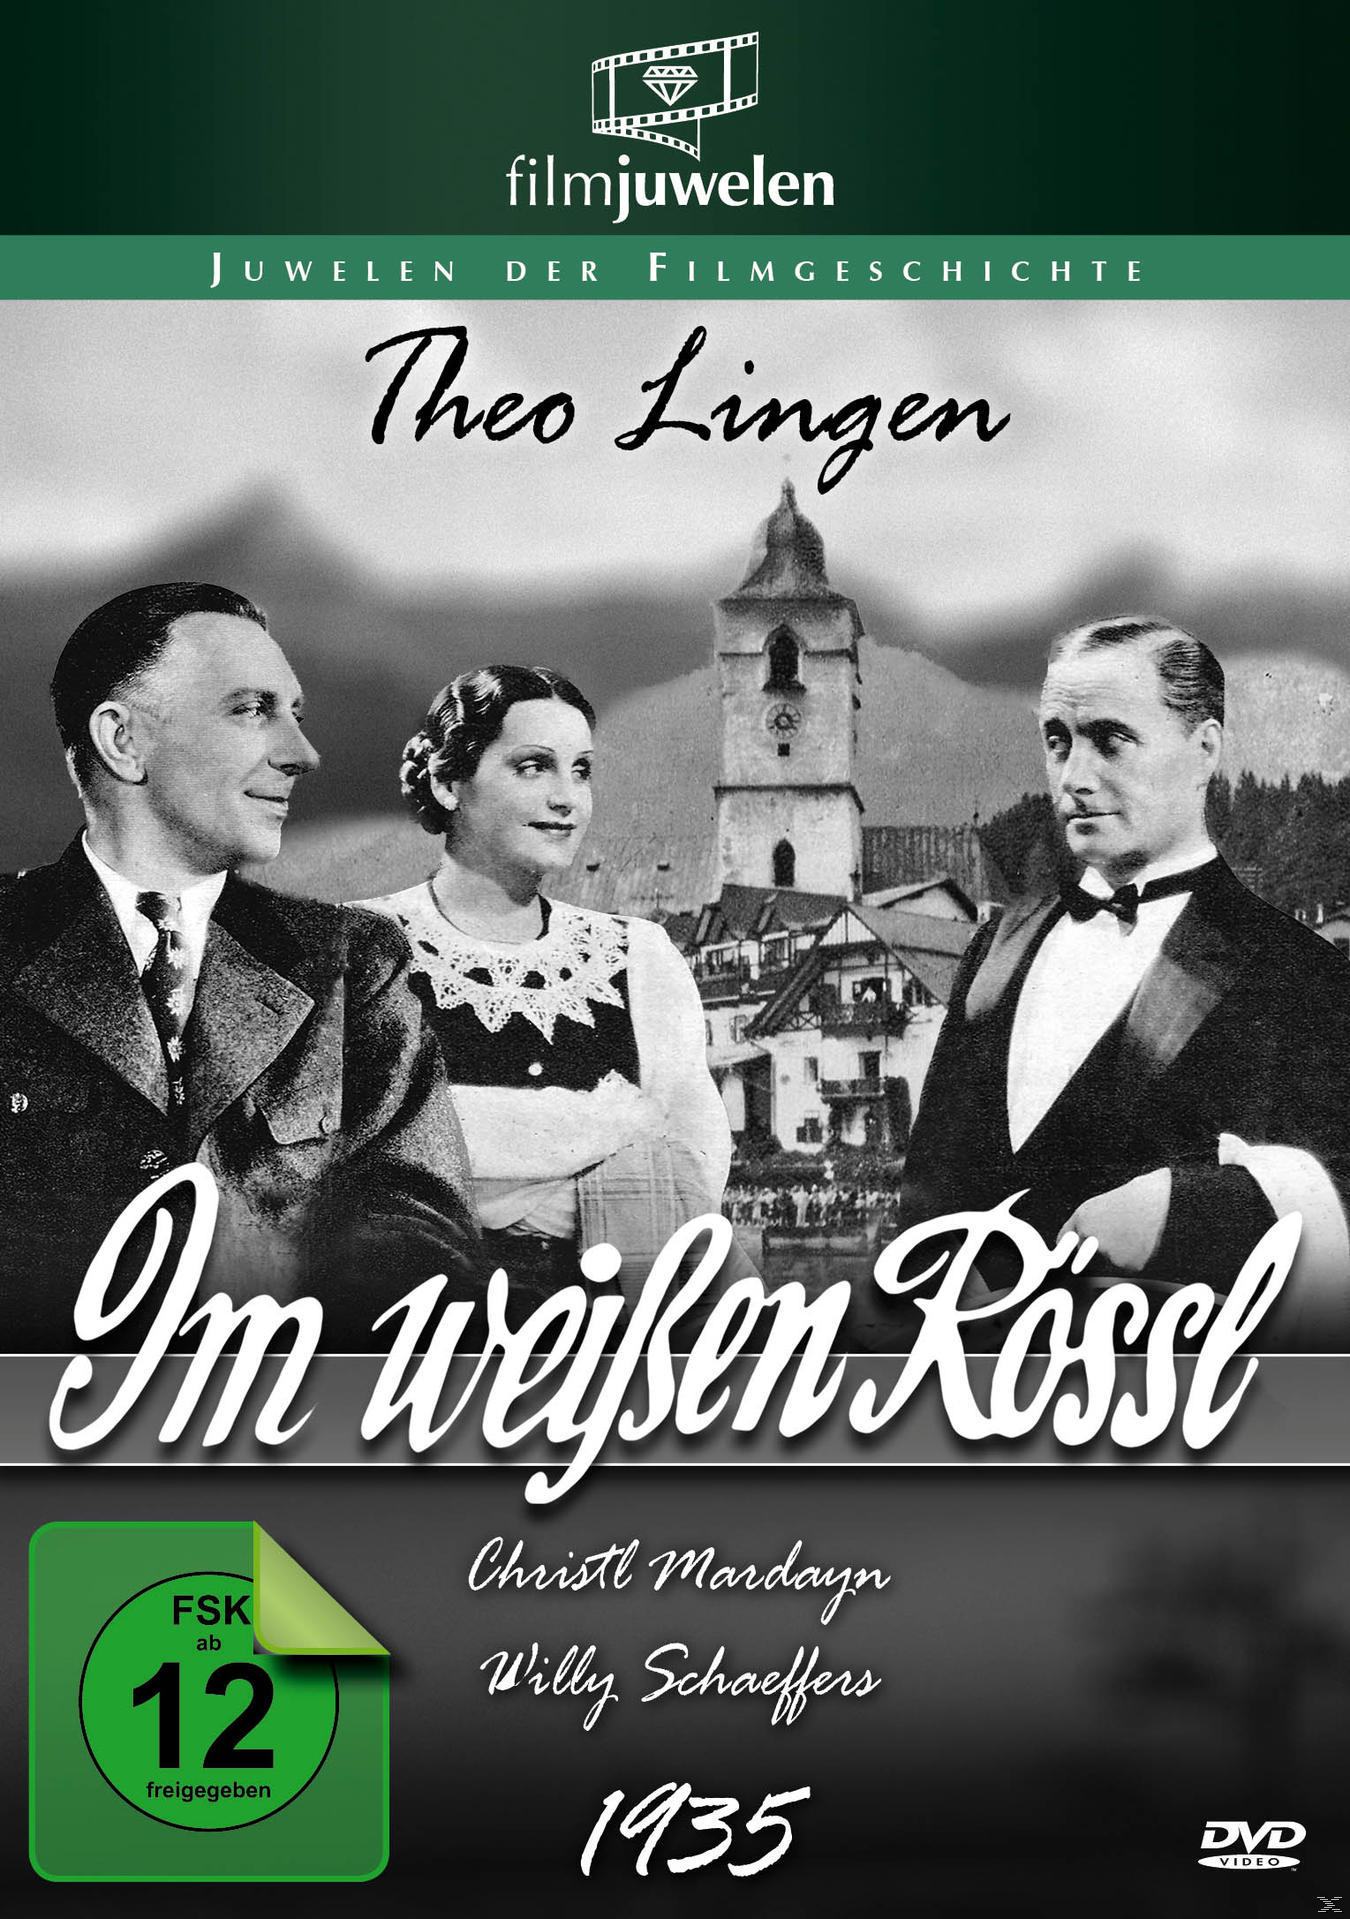 DVD WEISSEN RÖSSL (FILMJUWELEN) (1935) IM